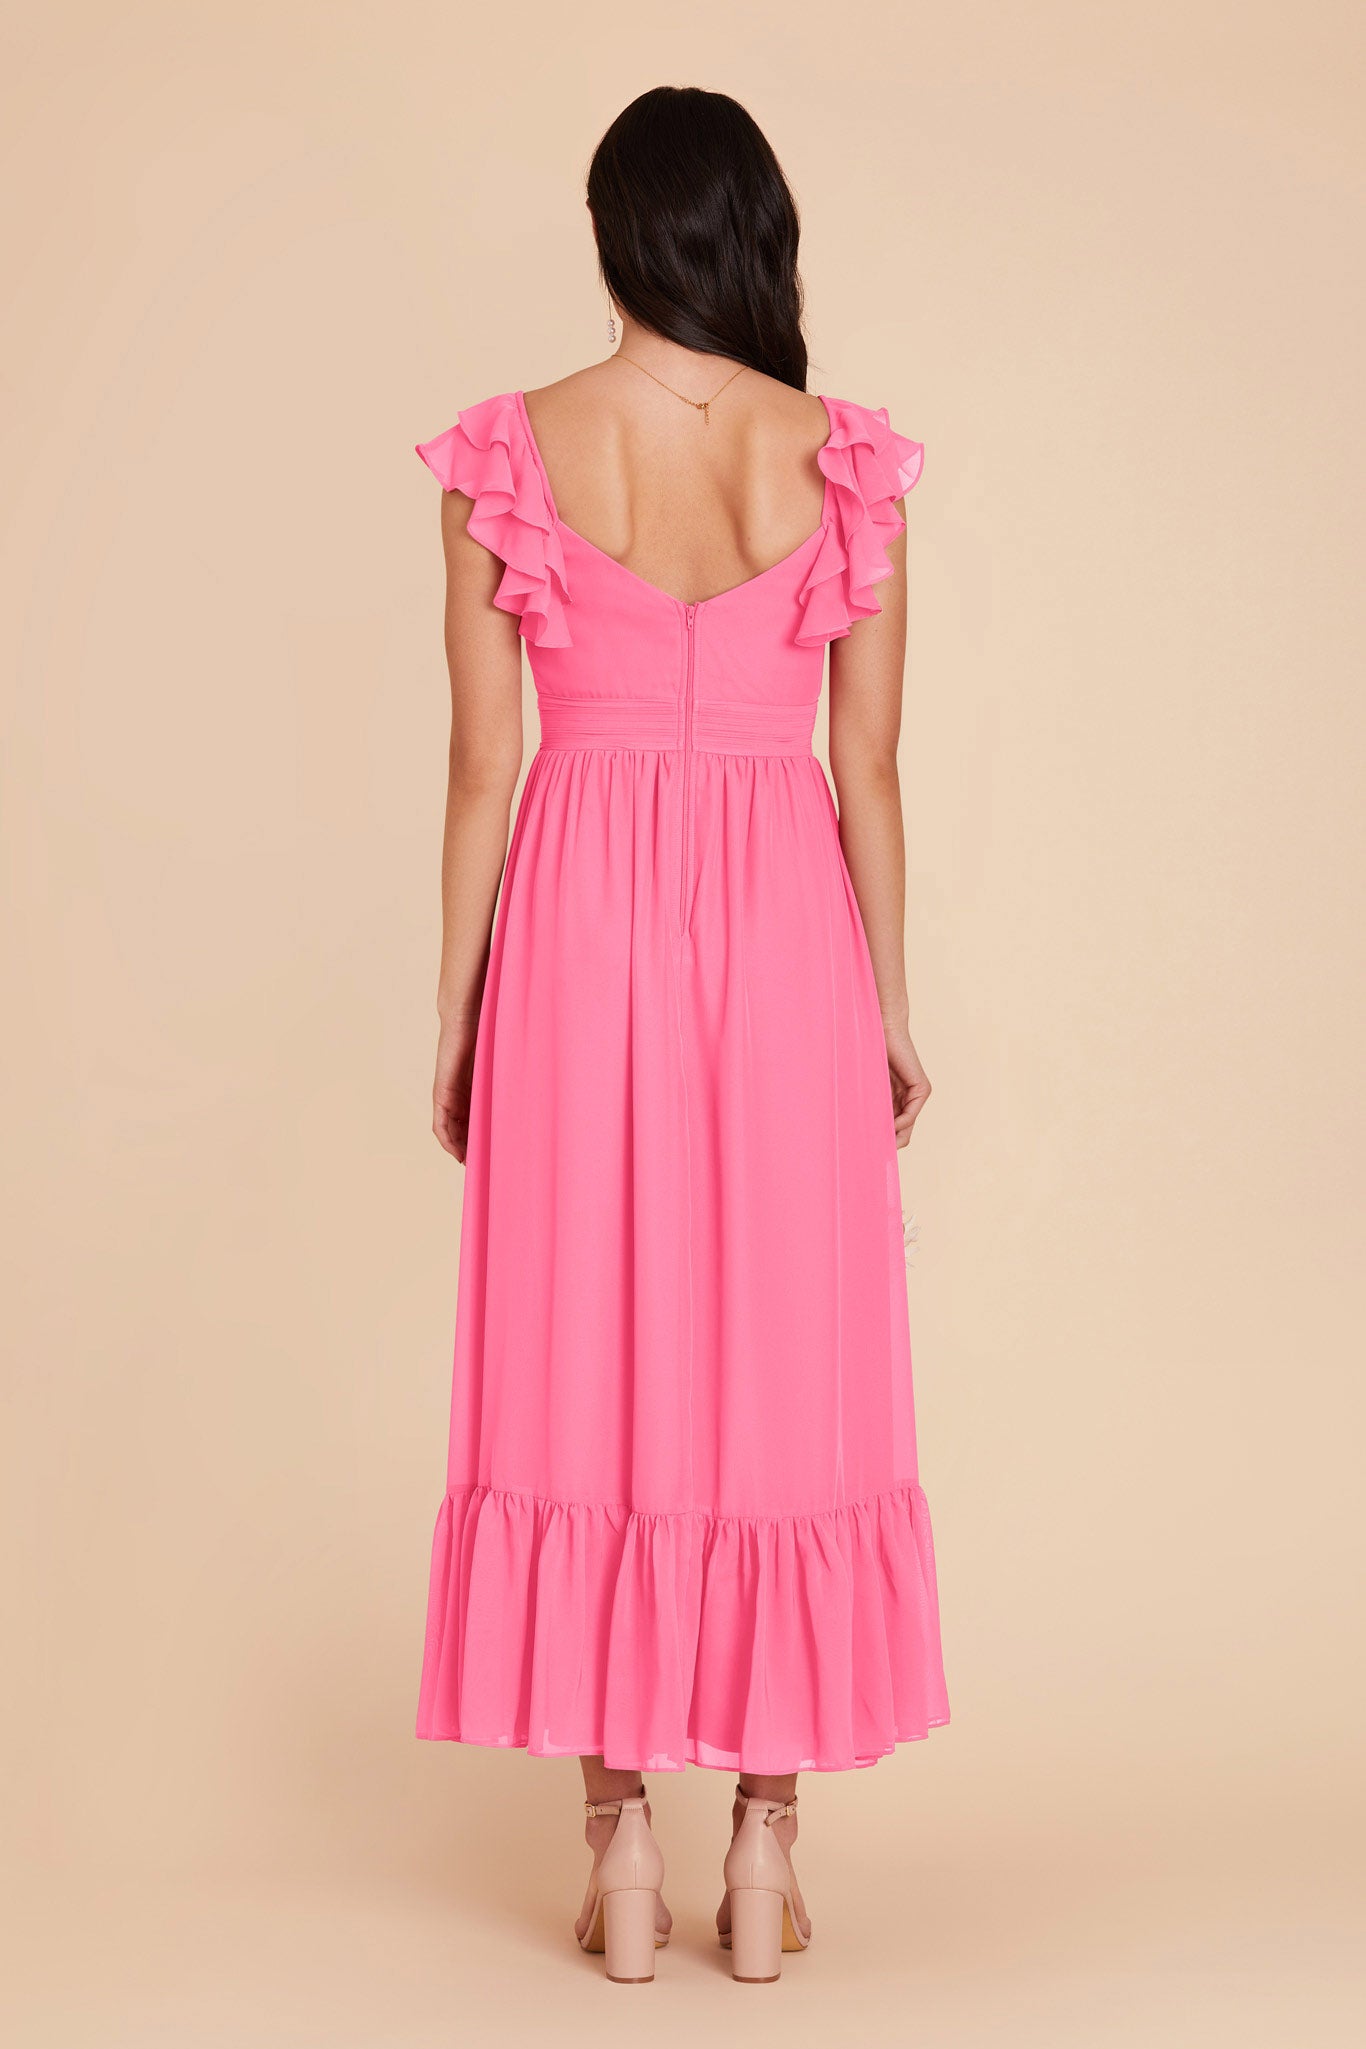 Bon Bon Pink Michelle Chiffon Dress by Birdy Grey